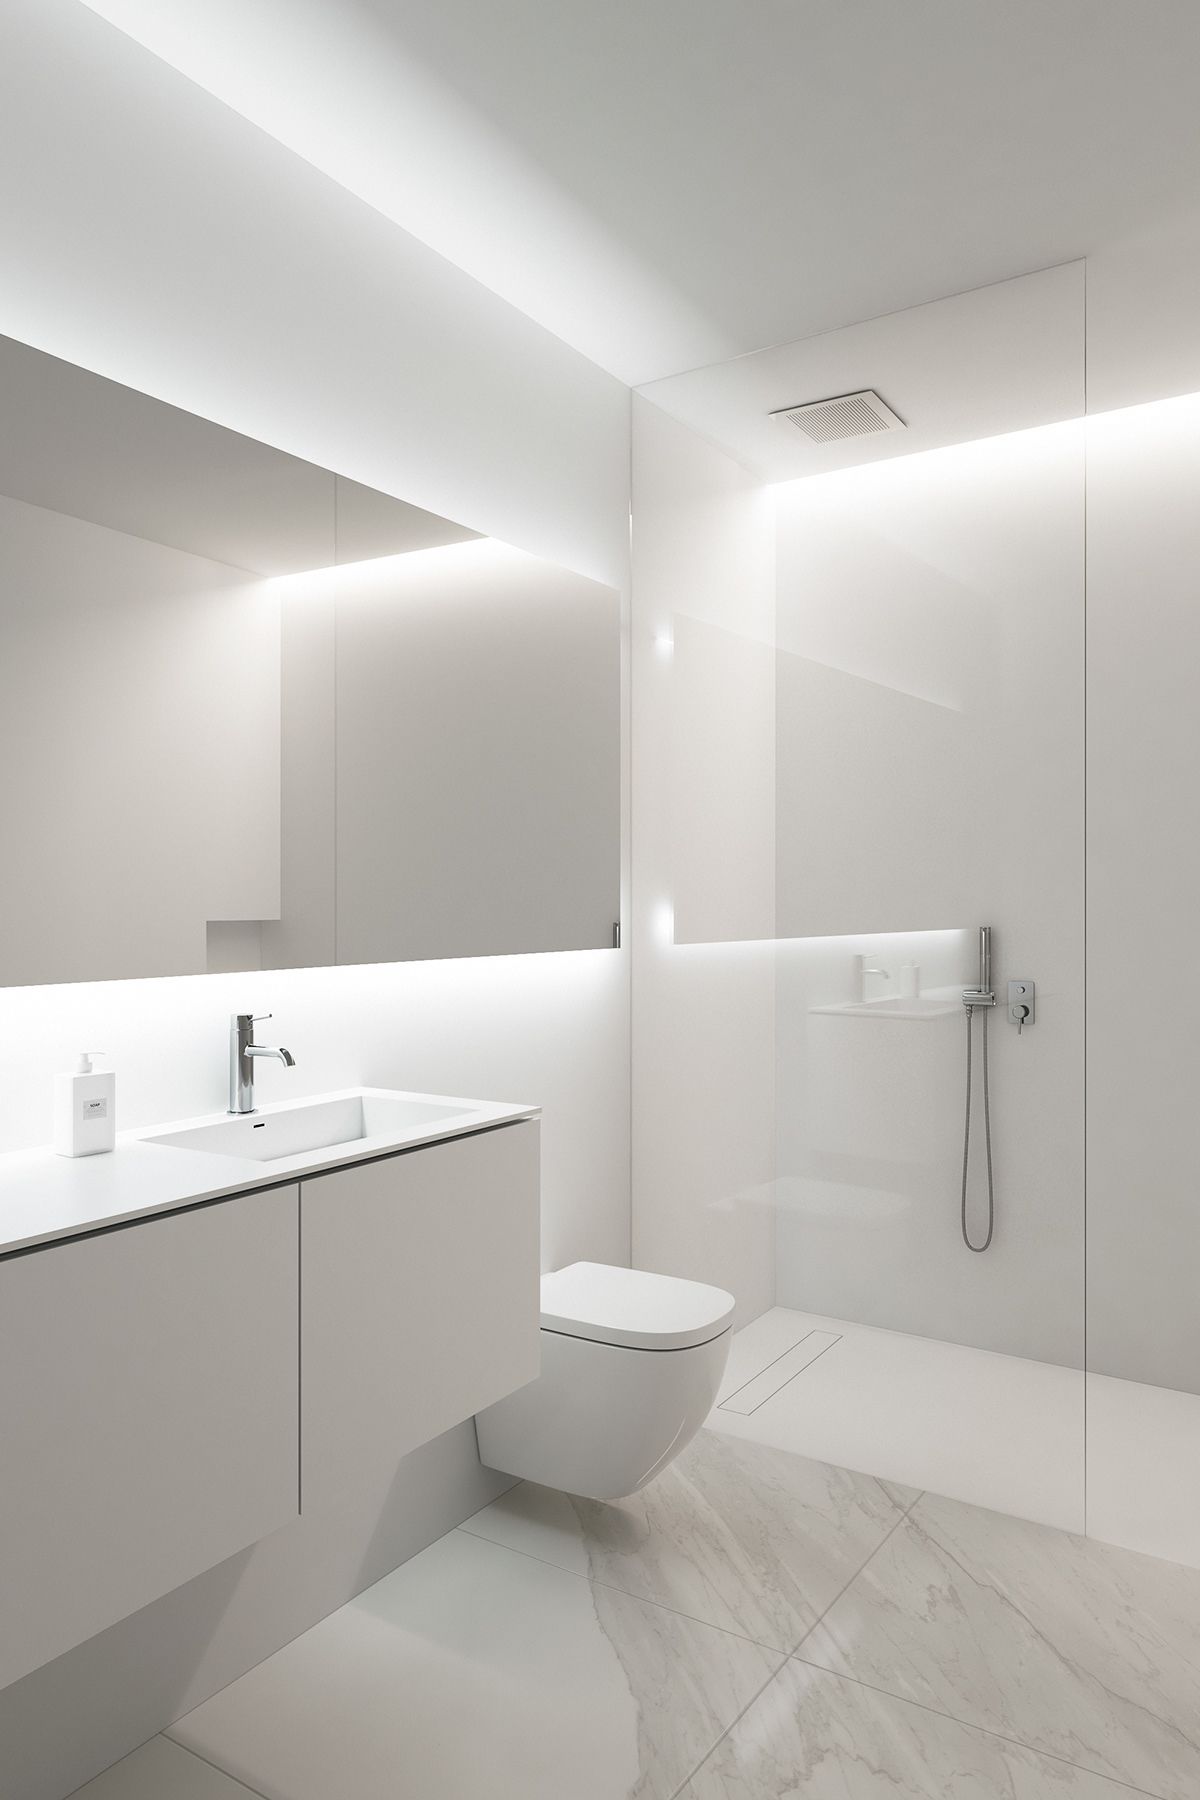 Plain White Bathroom for a Clean Impression